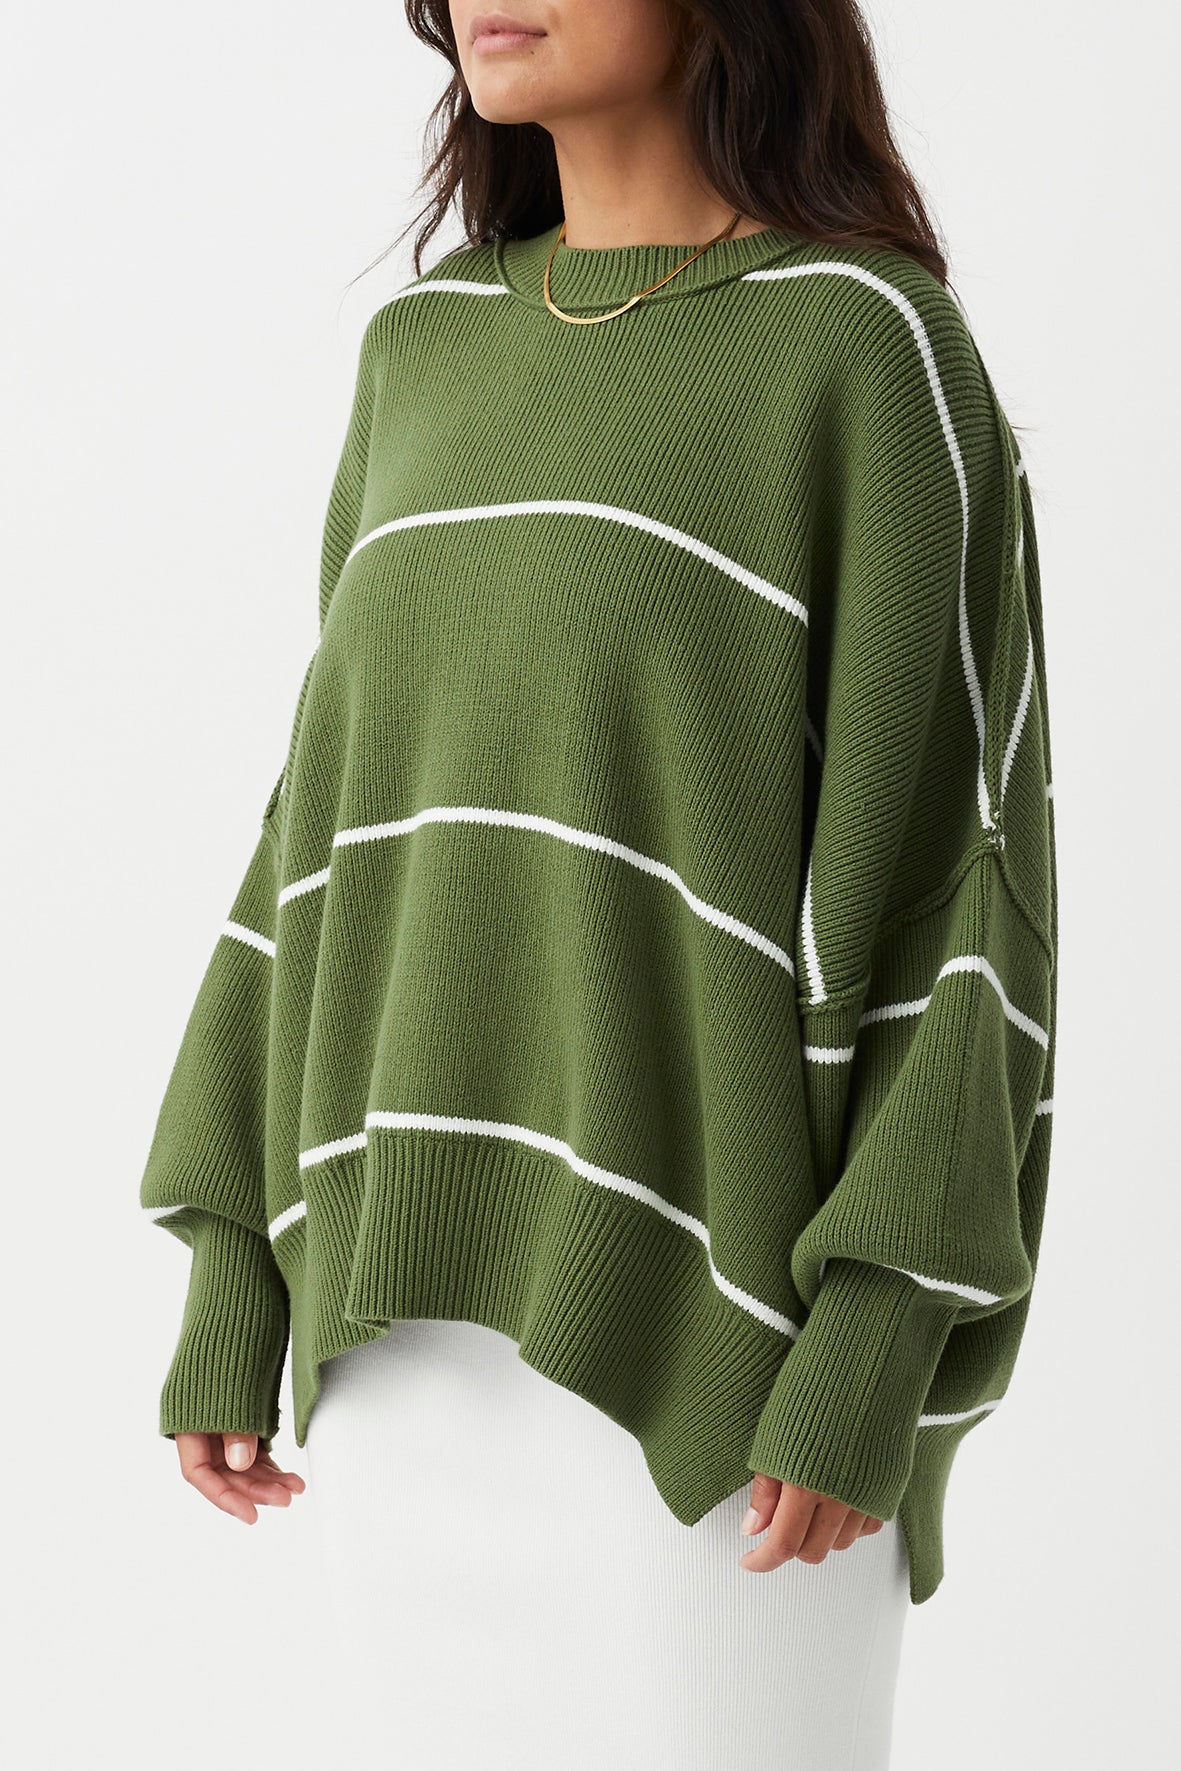 Harper Stripe Sweater - Caper/Cream